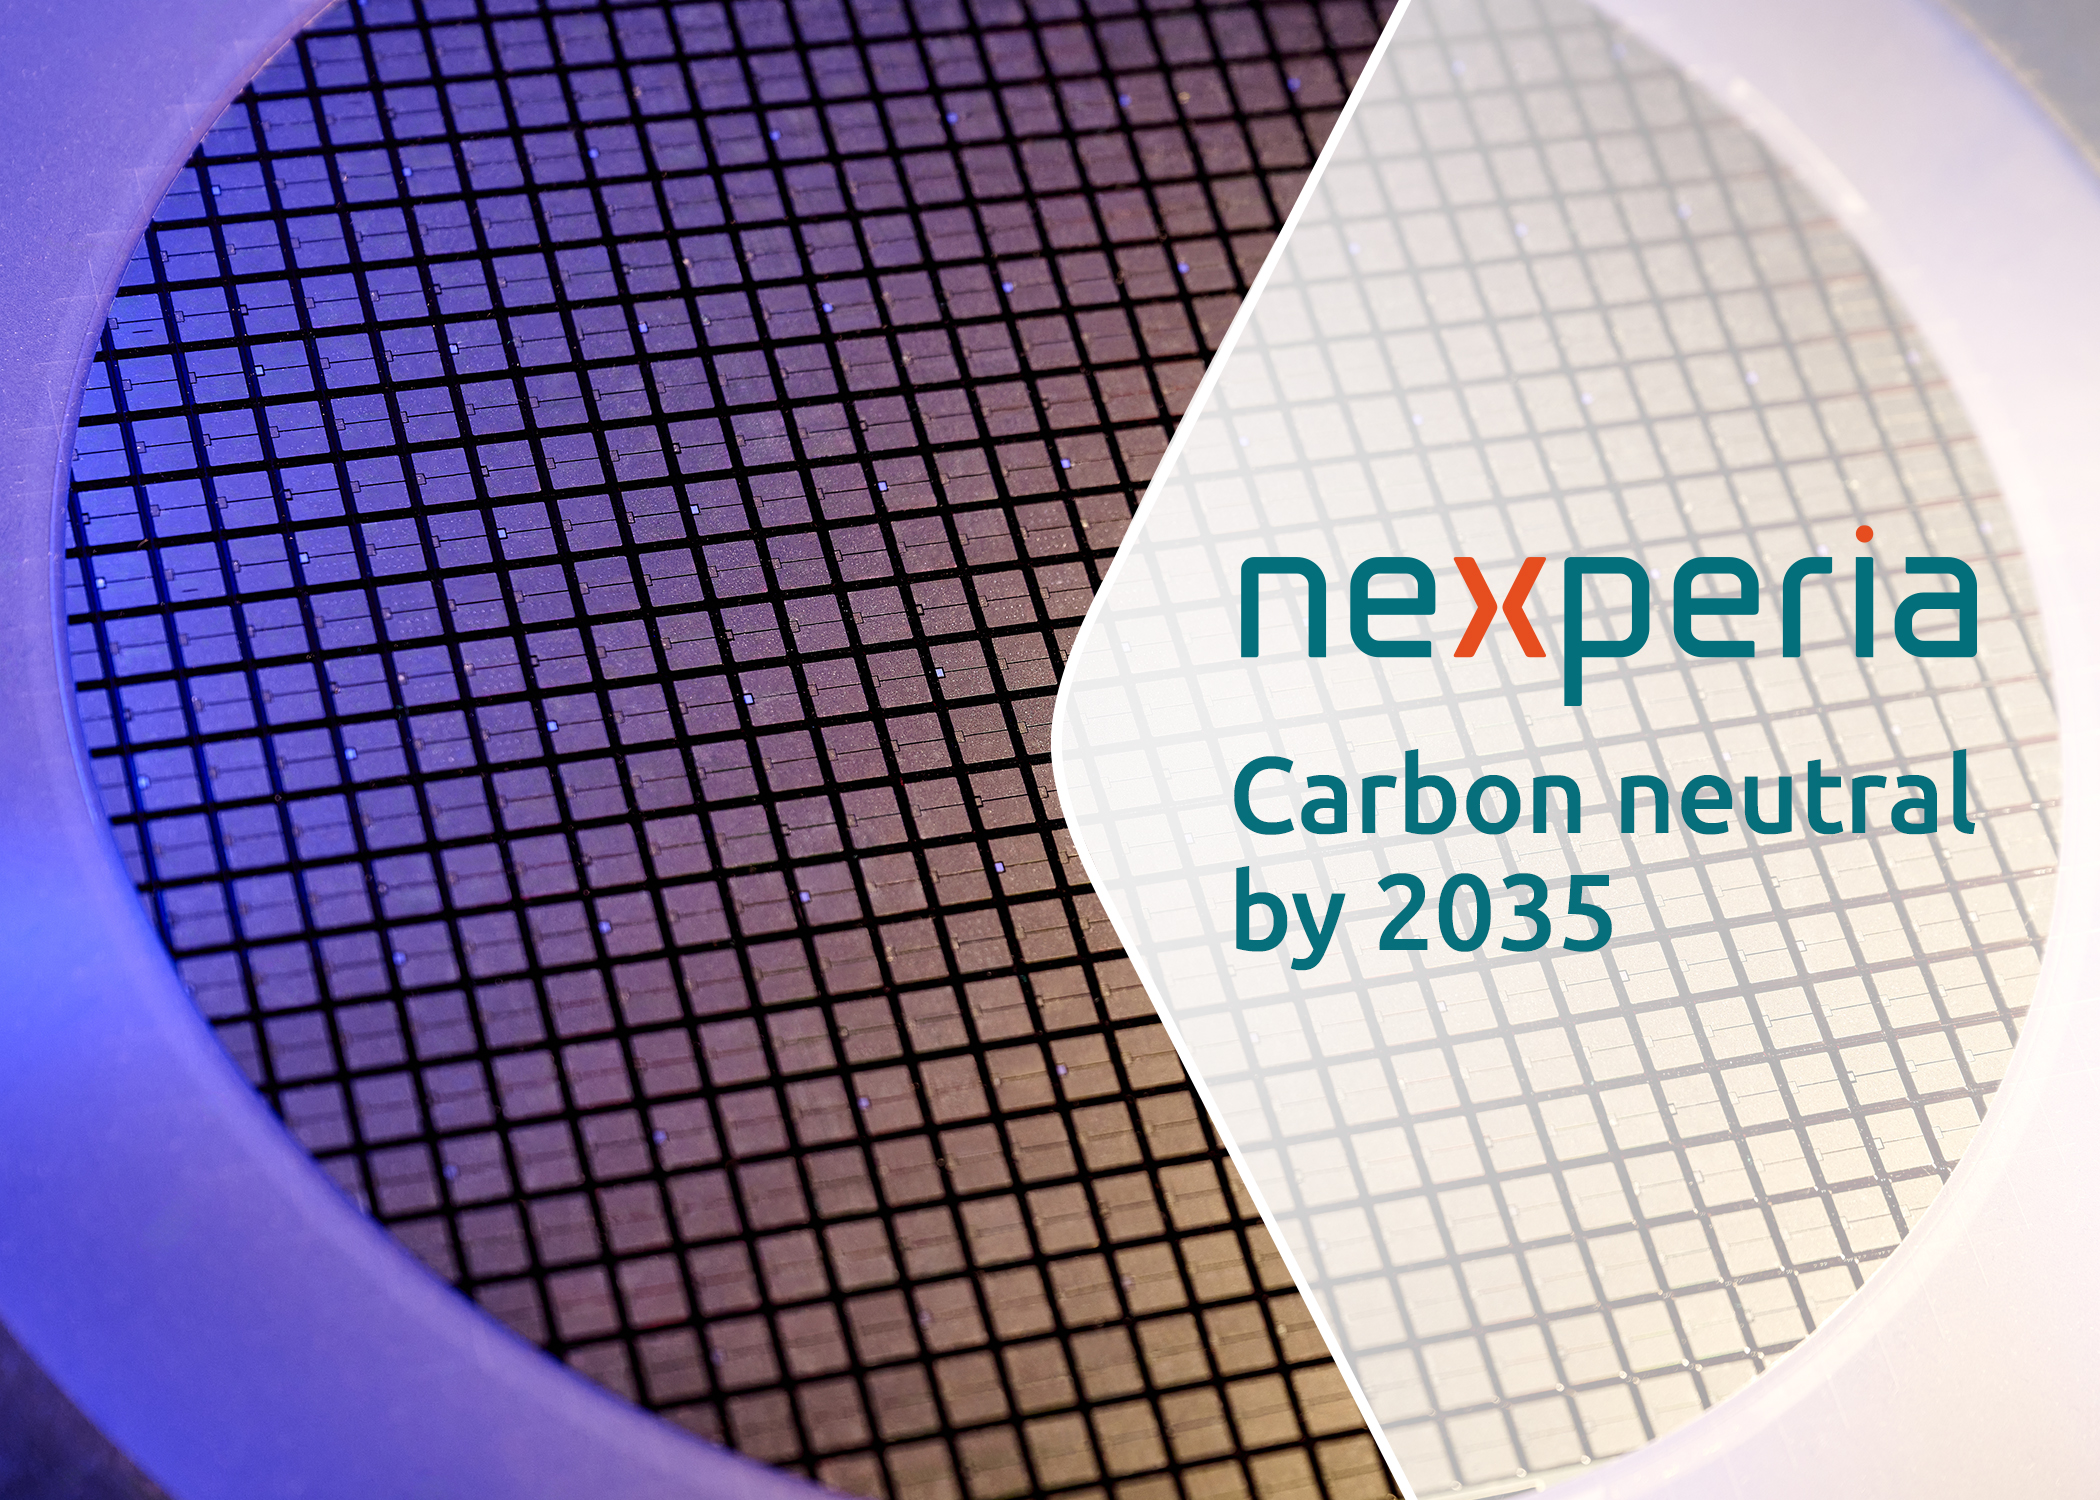 Nexperia设定2035年碳中和目标